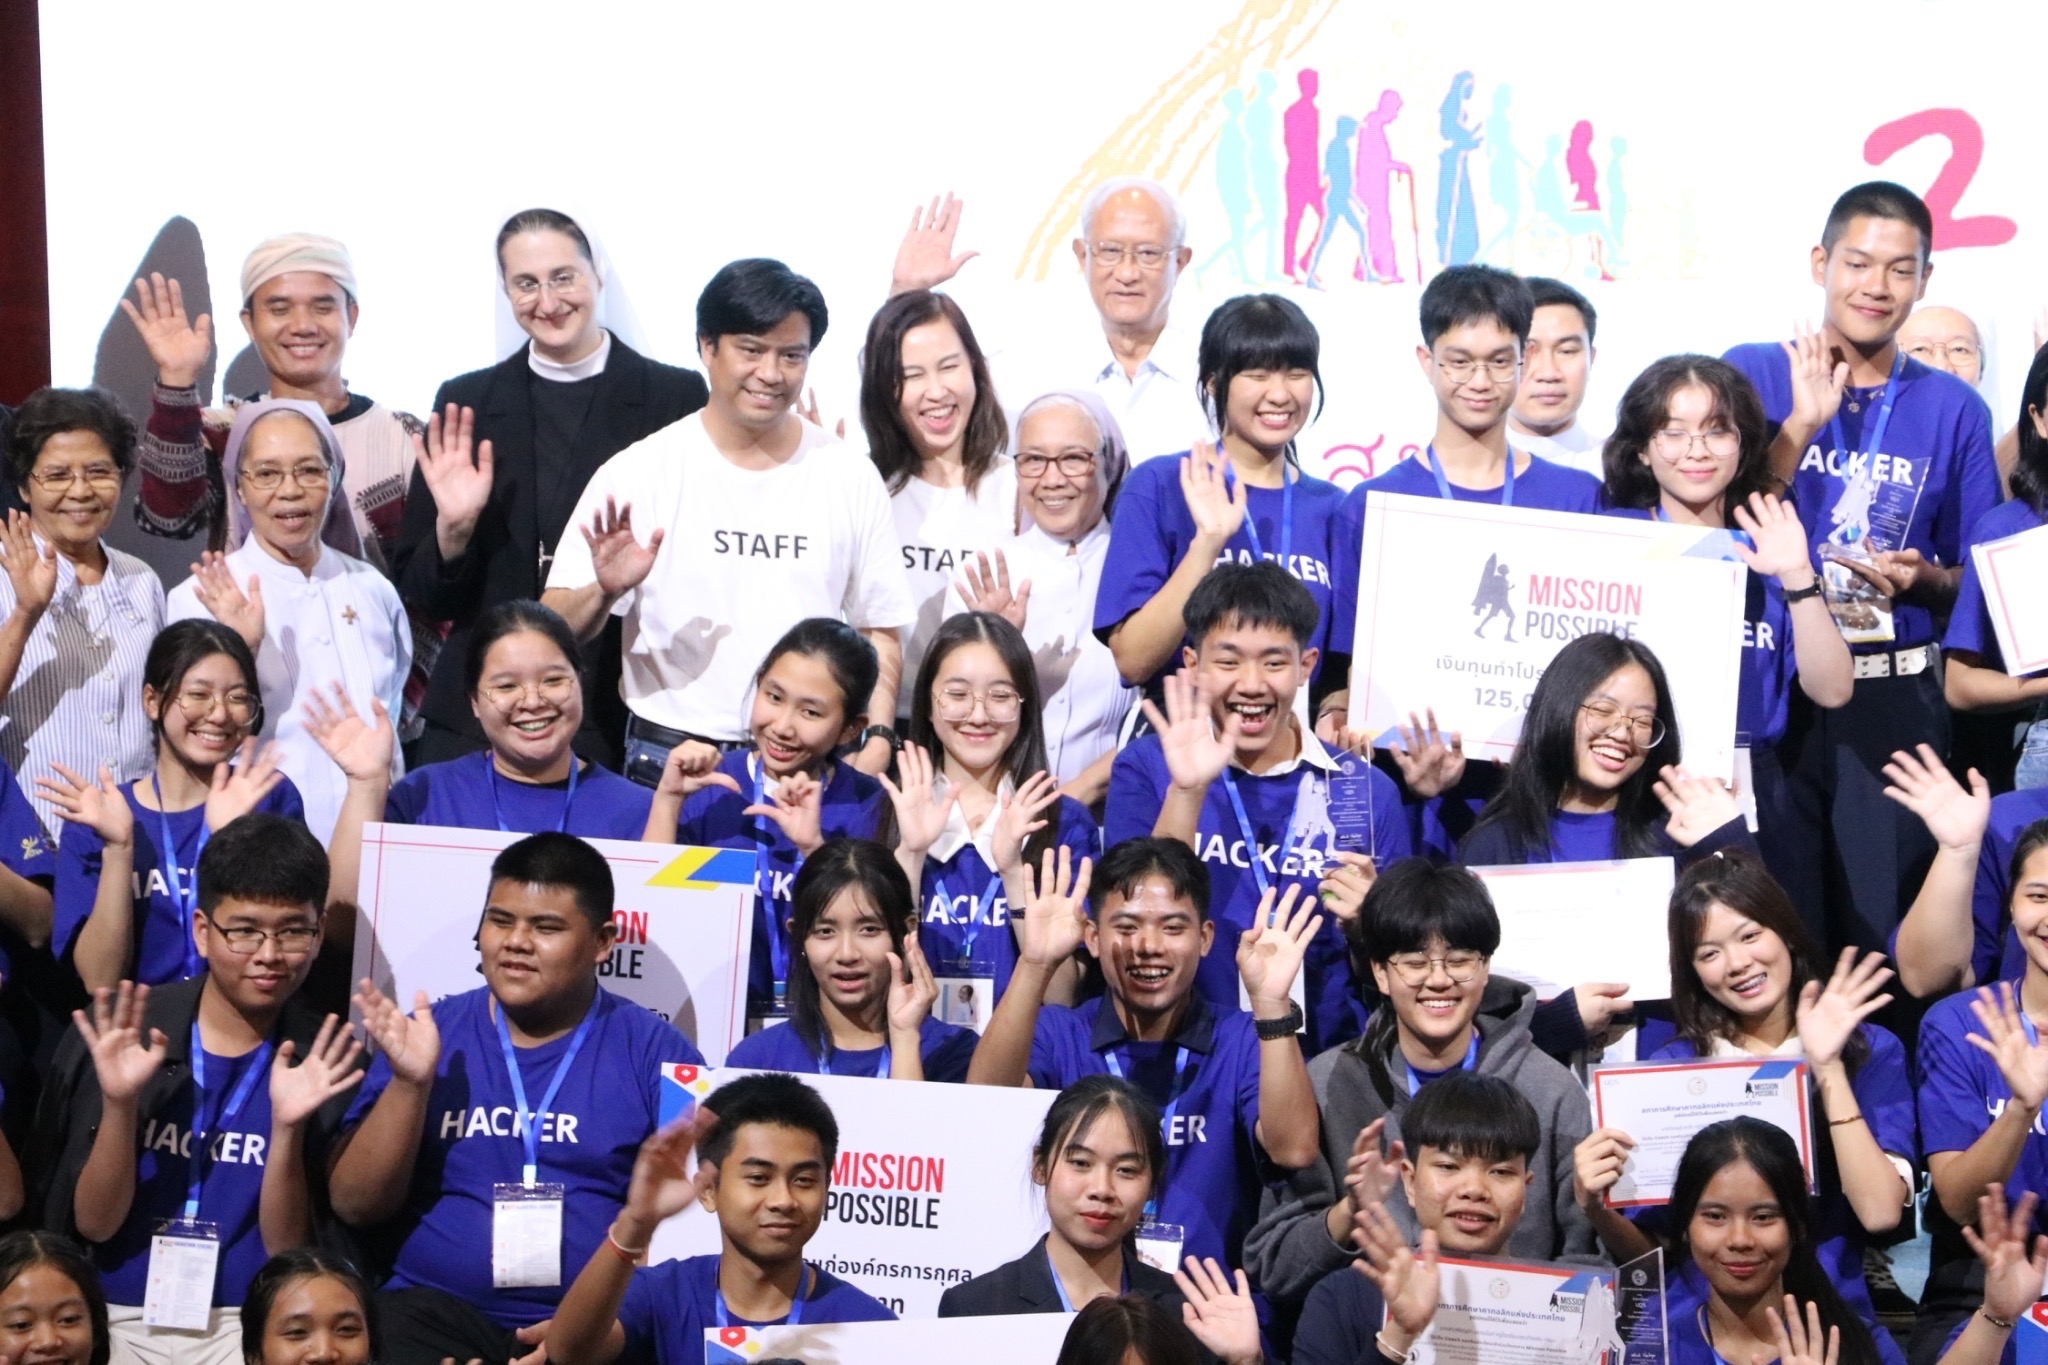 Giới trẻ Thái Lan mang tính hiệp hành vào cuộc sống với sự kiện “hackathon”